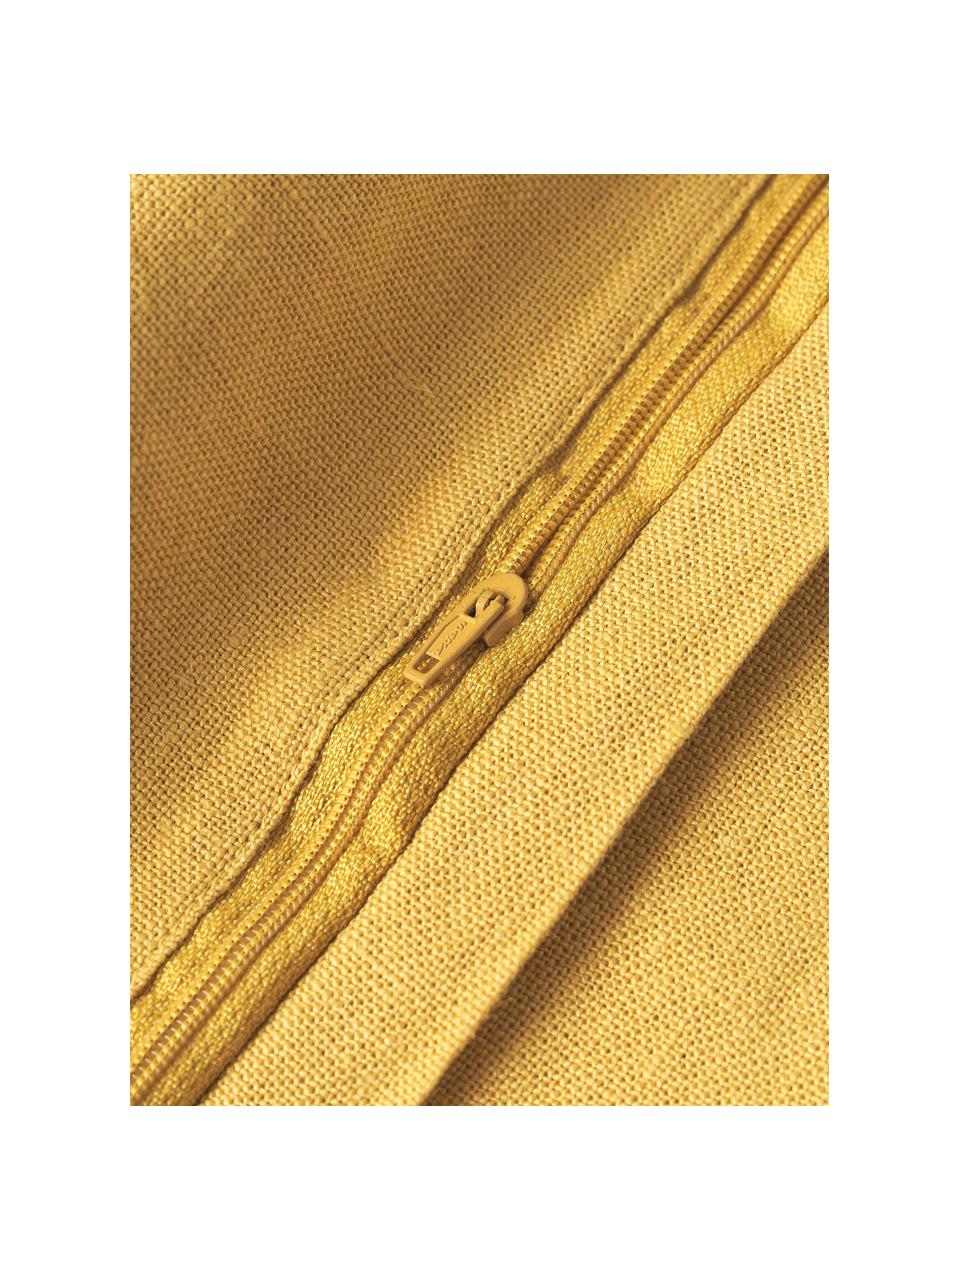 Linnen kussenhoes Luana in geel, 100% linnen

Linnen voelt van nature wat ruw aan en heeft een natuurlijke gekreukte uitstraling.
De hoge scheurvastheid maakt linnen slijtvast en slijtvast., Geel, B 30 x L 50 cm